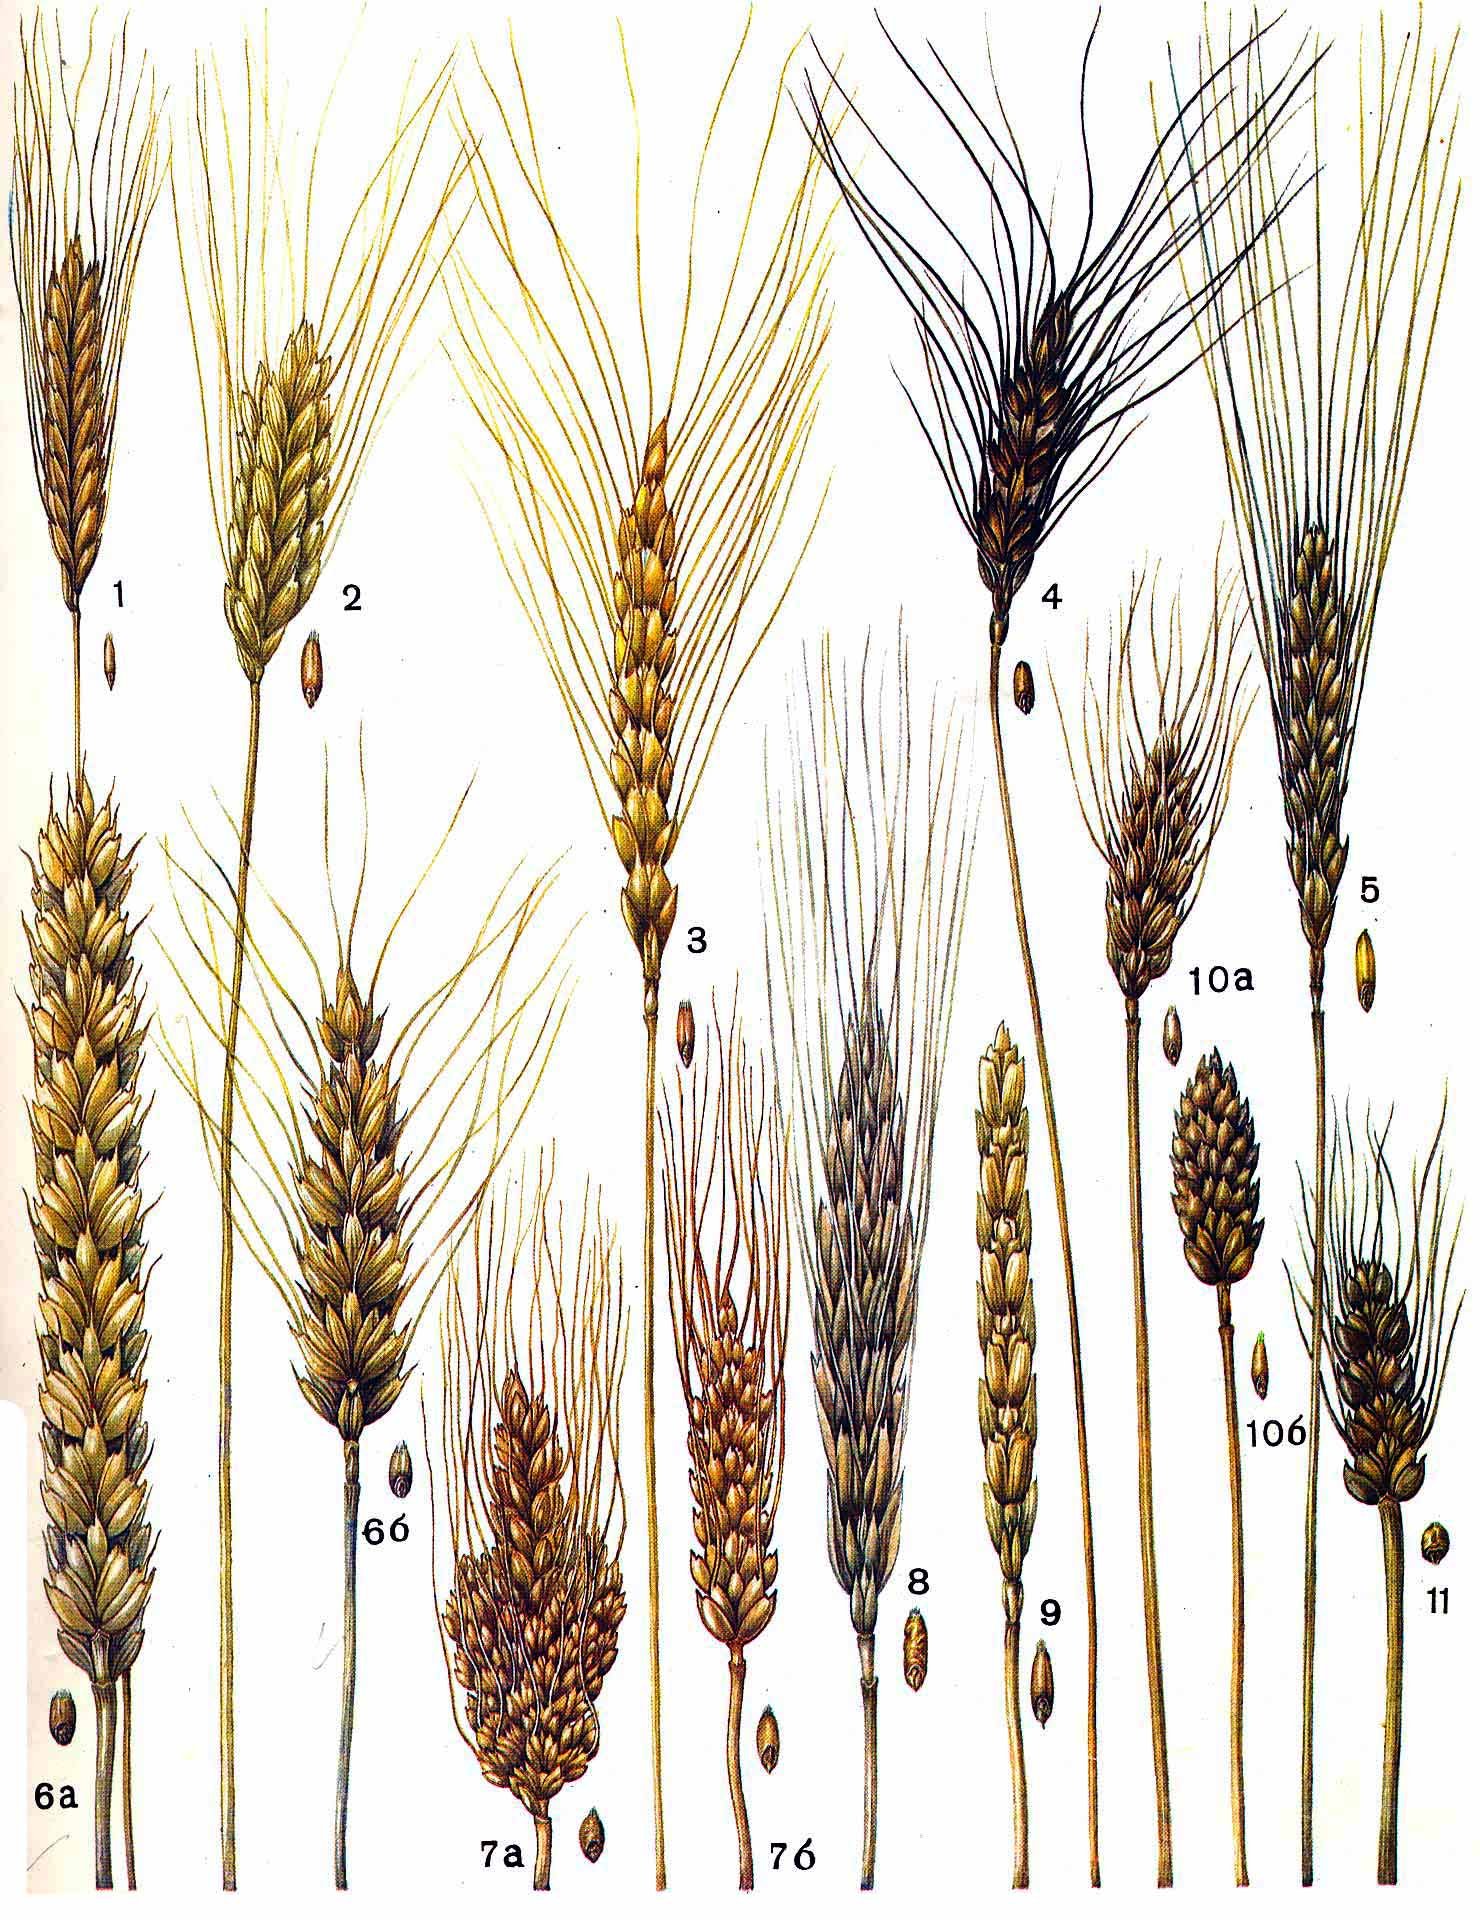 Булавовидный Колос. Семейство Мятликовые пшеница. Хлебный злак. Соцветие пшеницы.